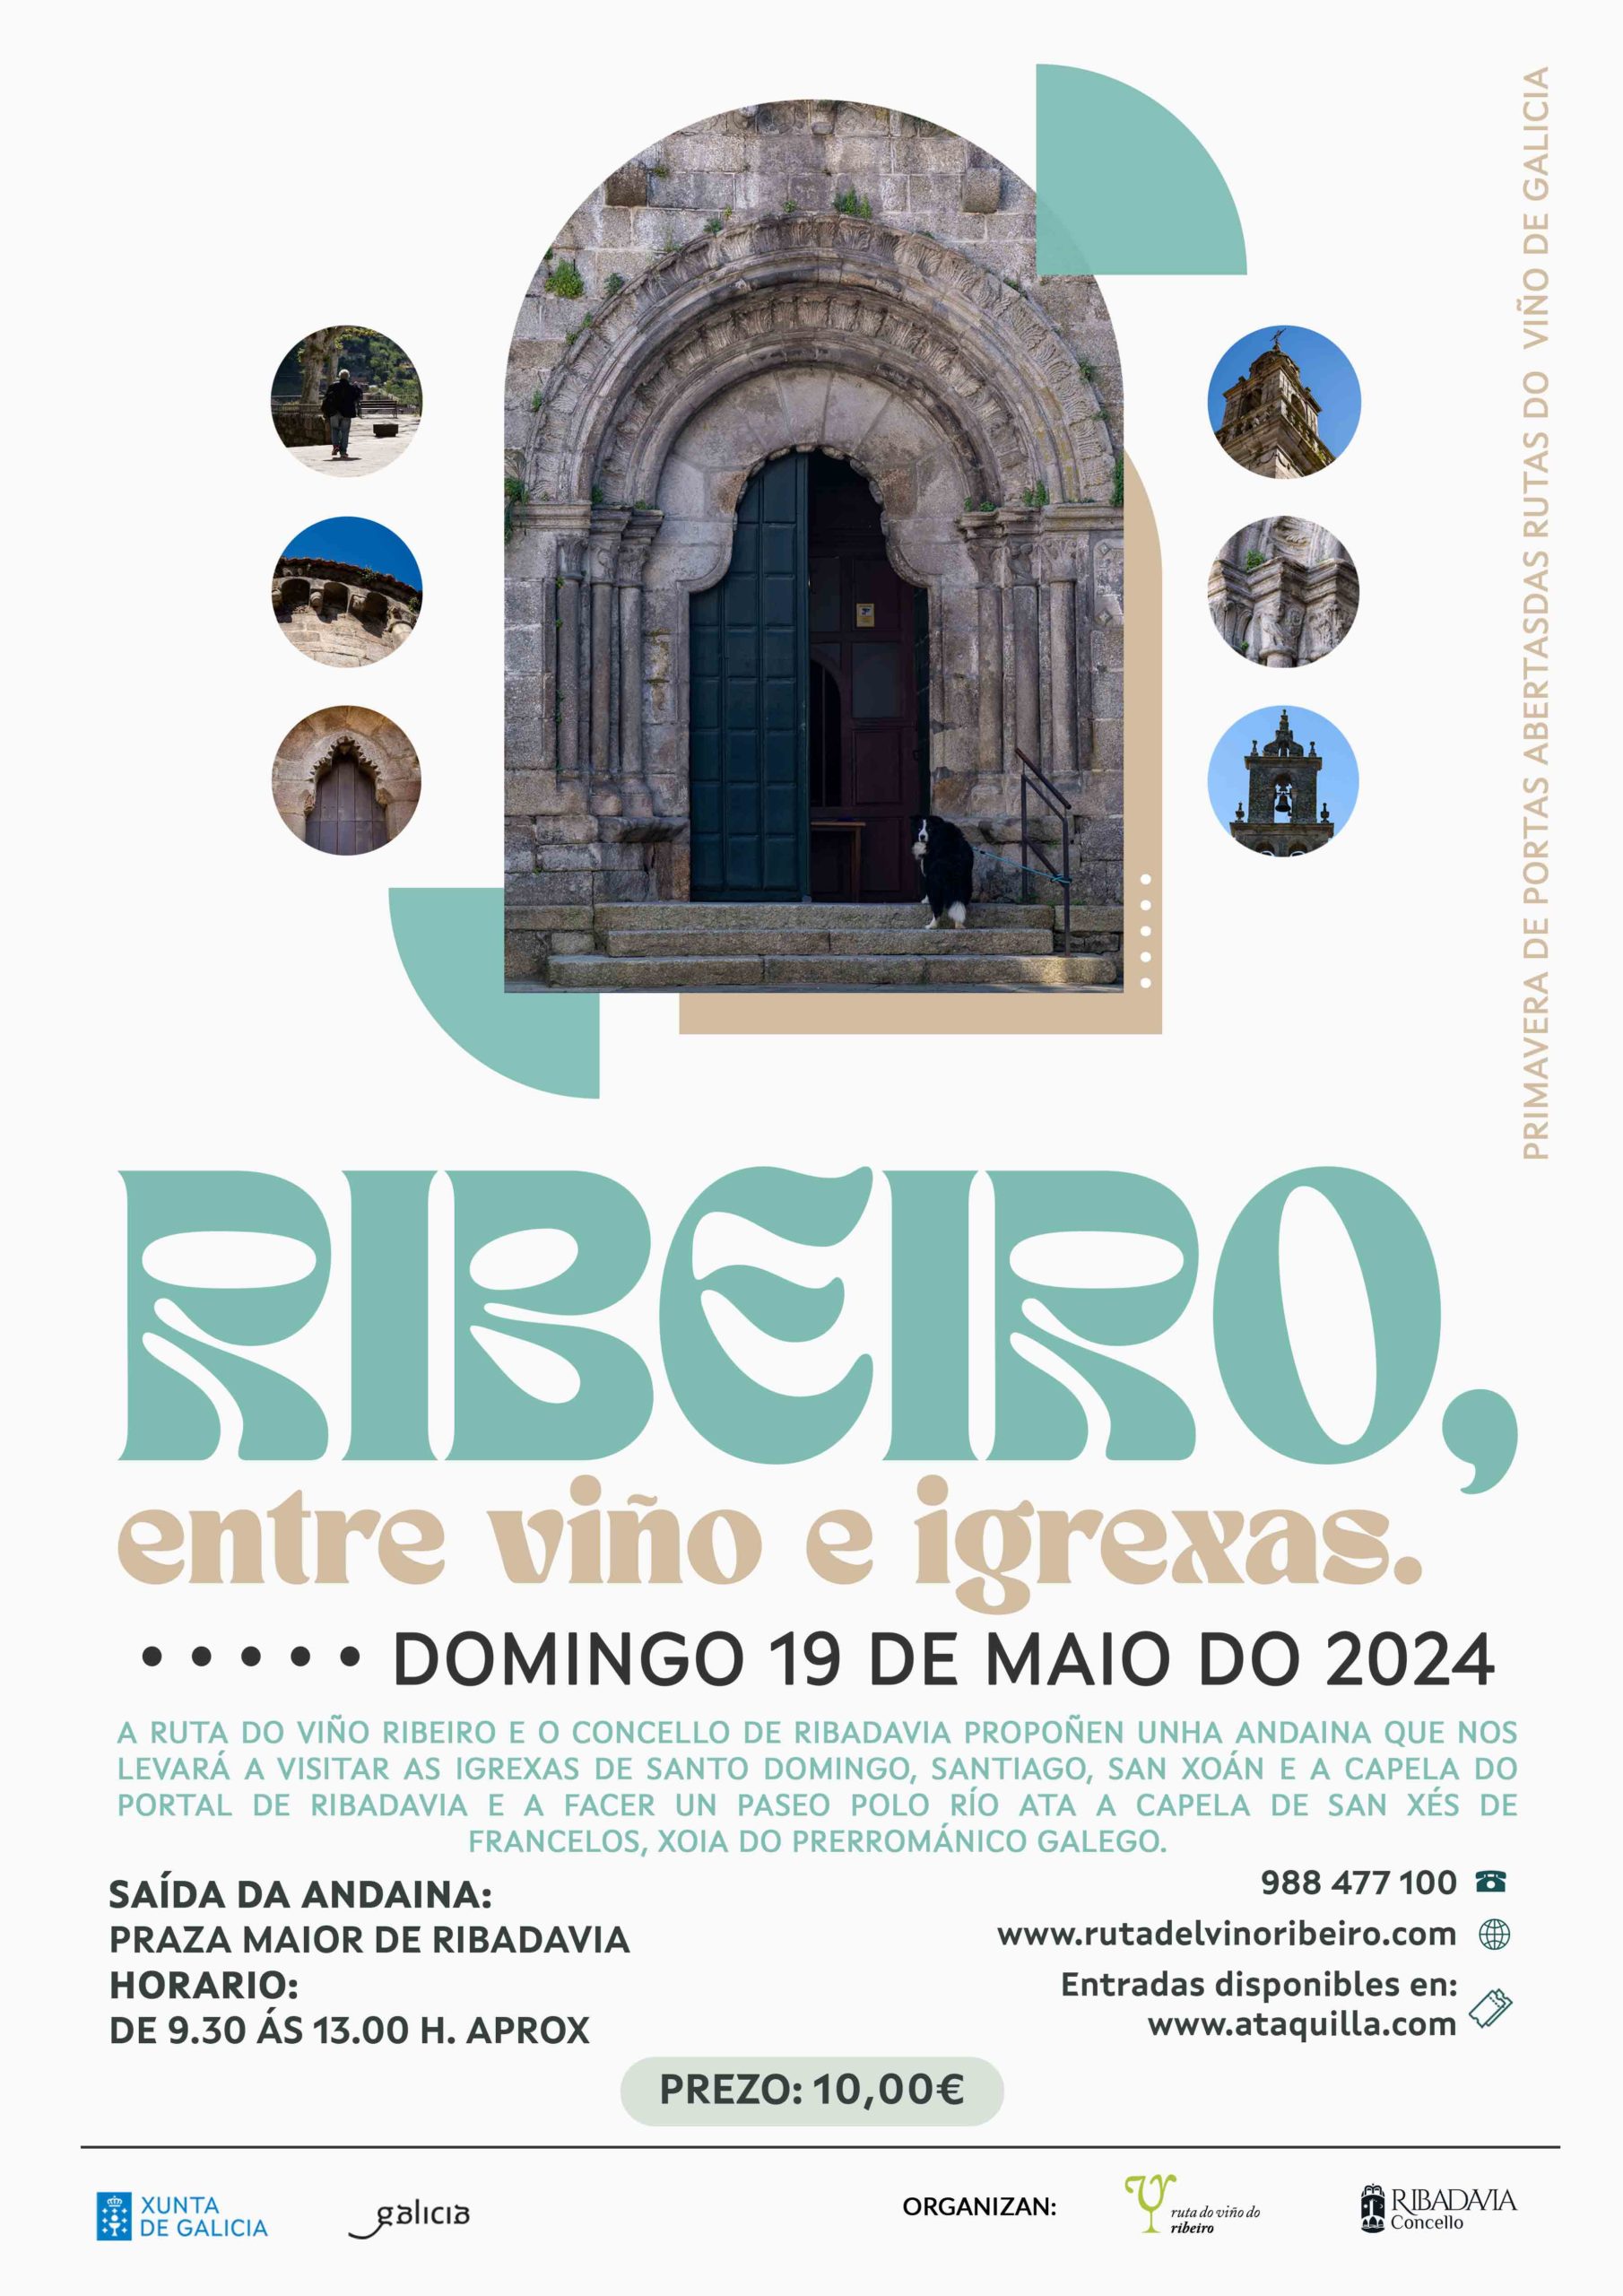 Ribeiro, viño, igrexas